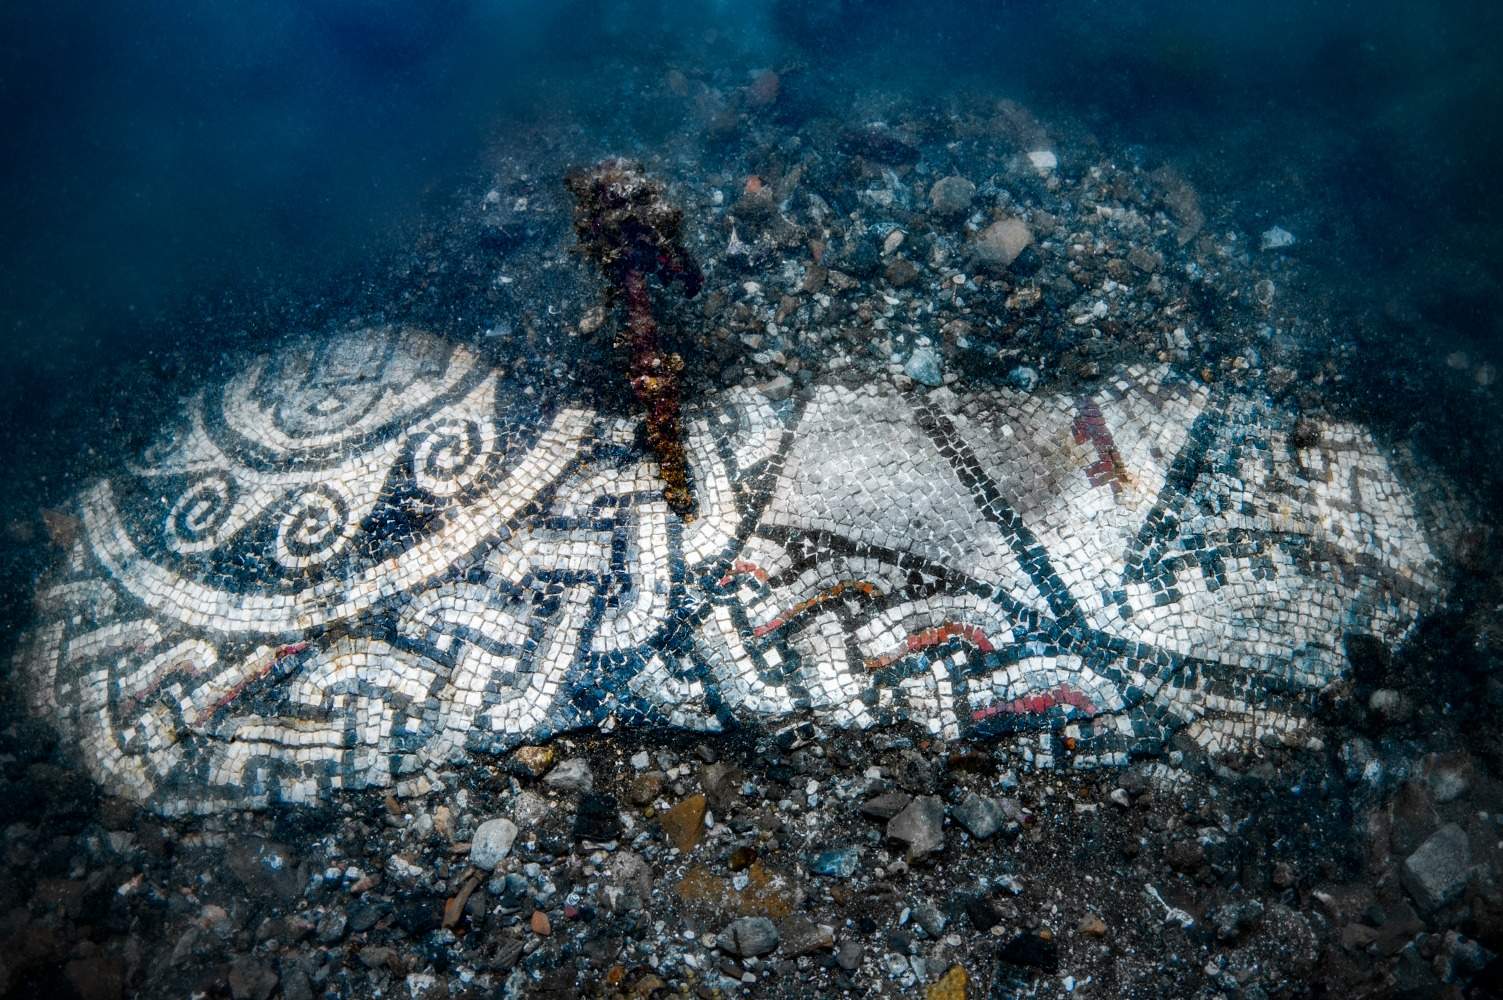 Nouvelle mosaïque submergée découverte à Baia, avec entrelacement de lignes bleues